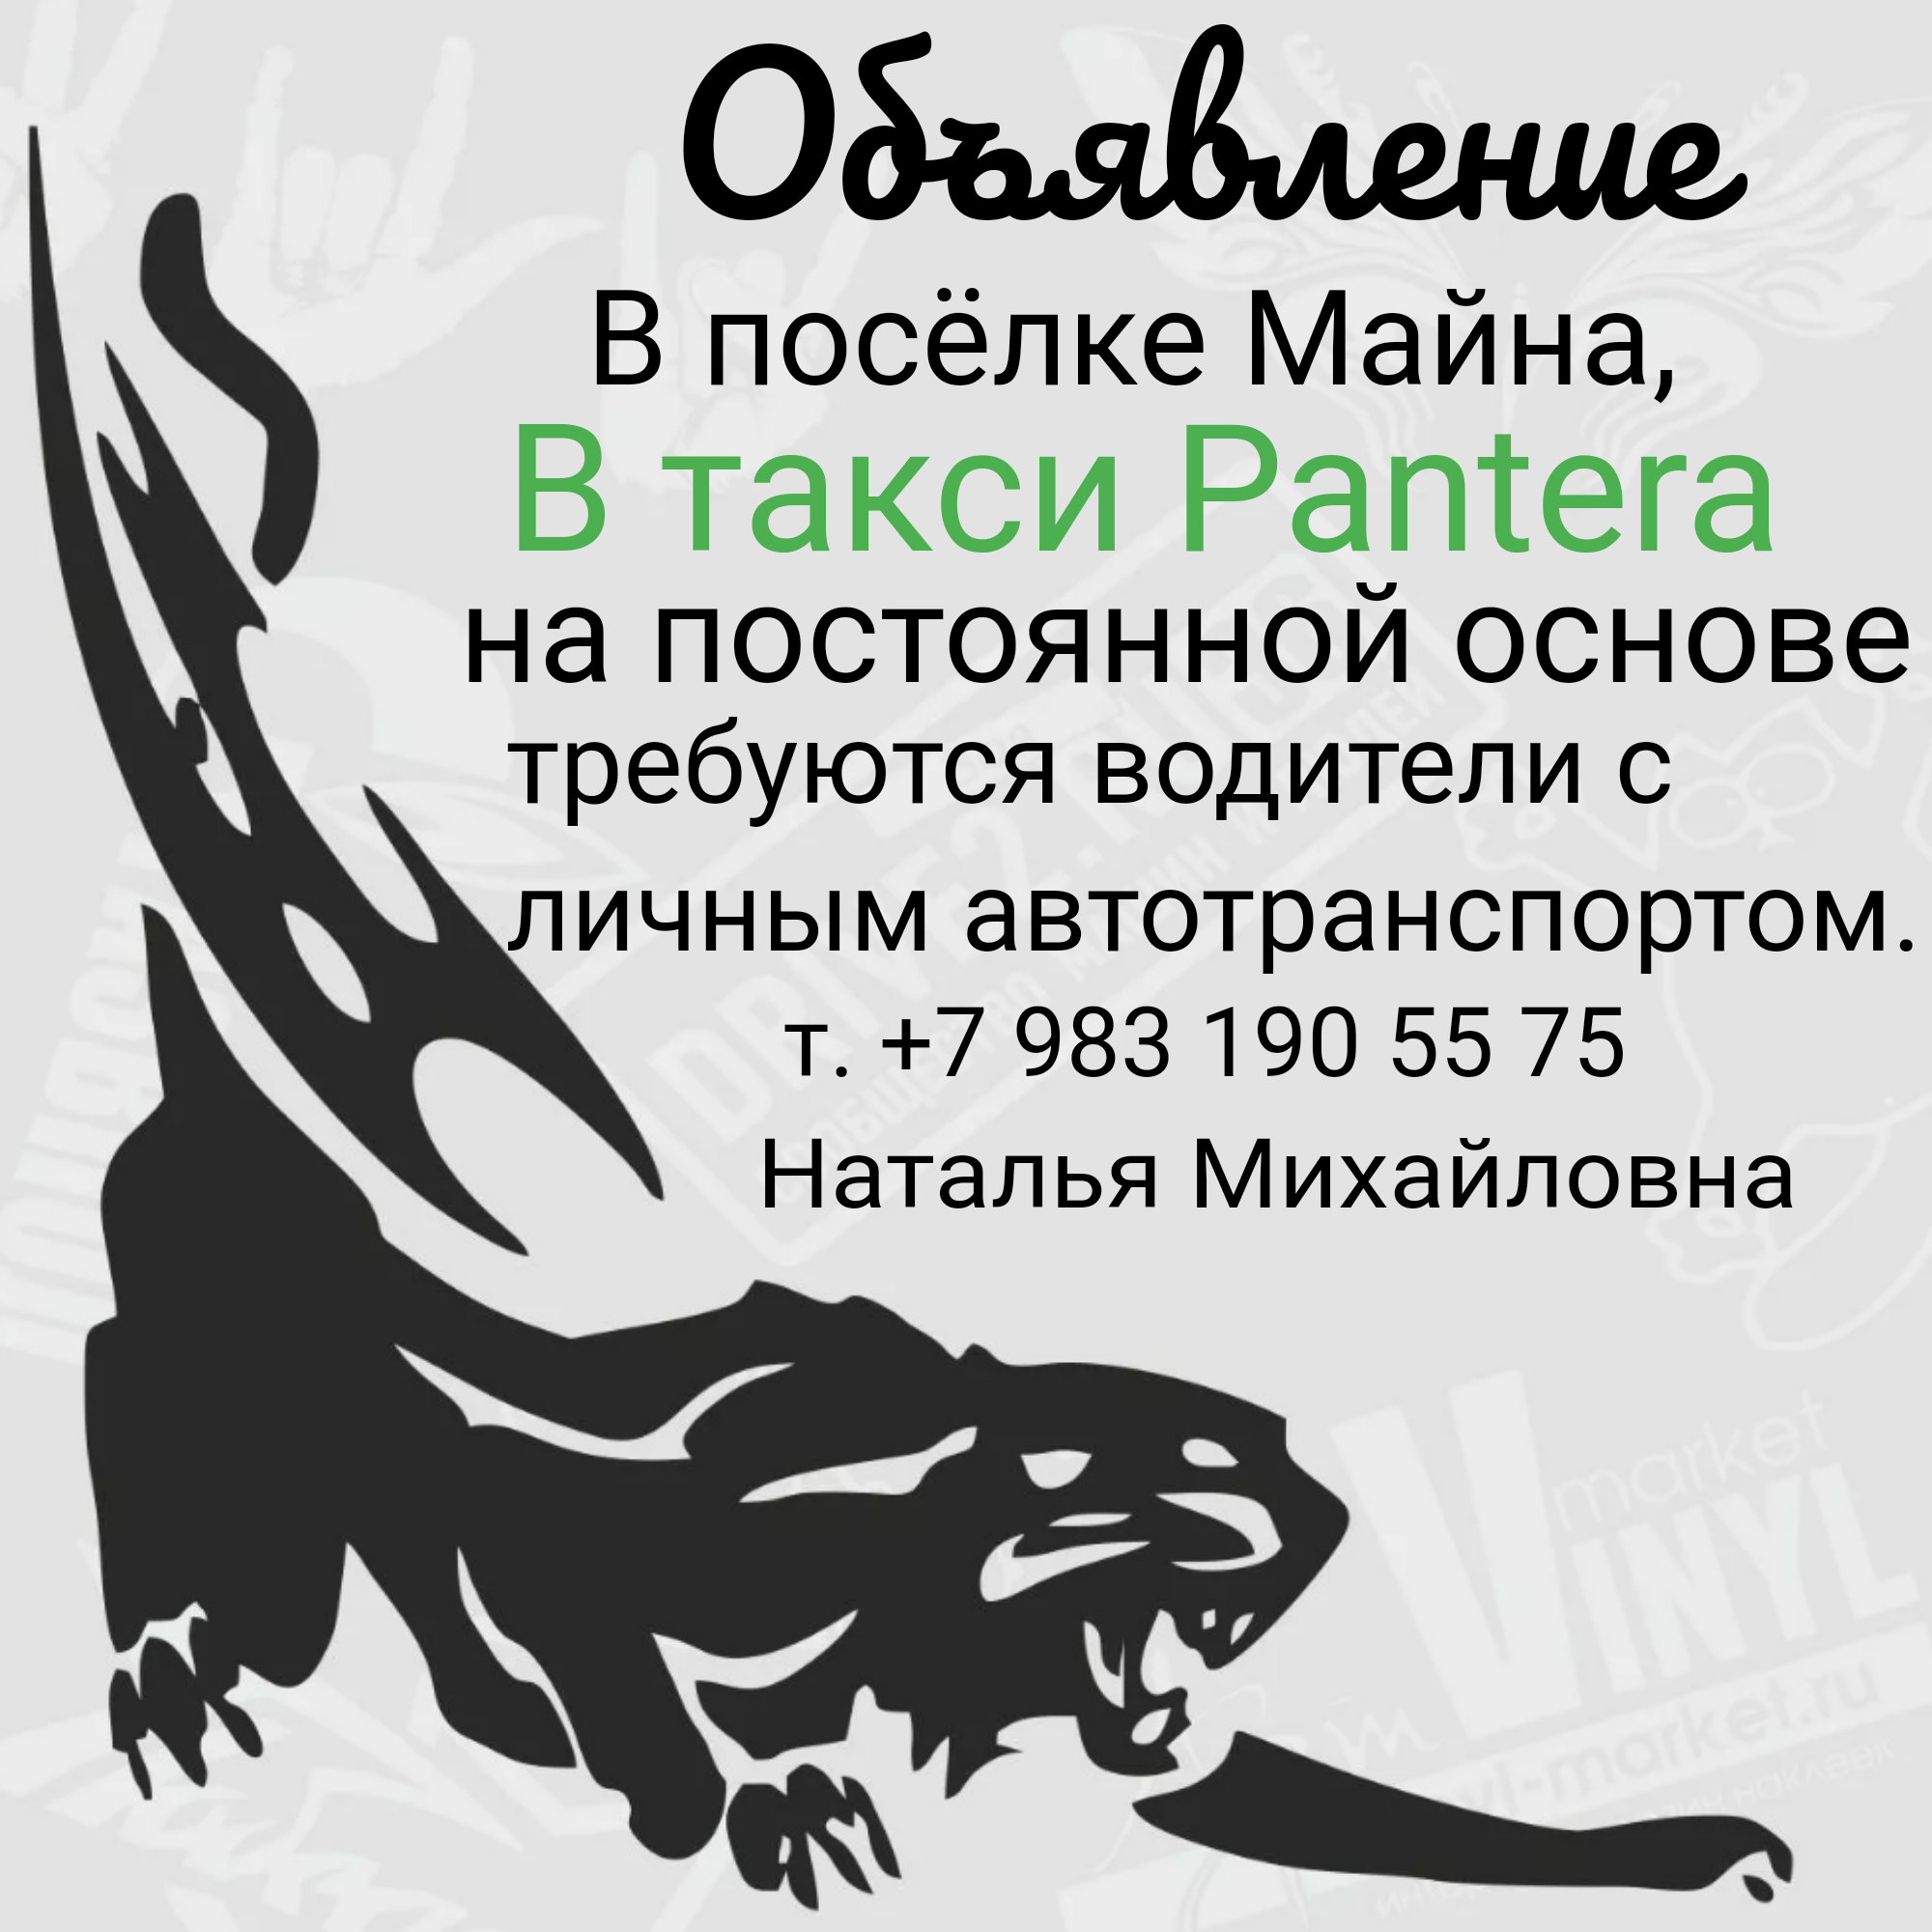 Саяногорск Инфо - logo3_5_6263.jpeg, Скачано: 46